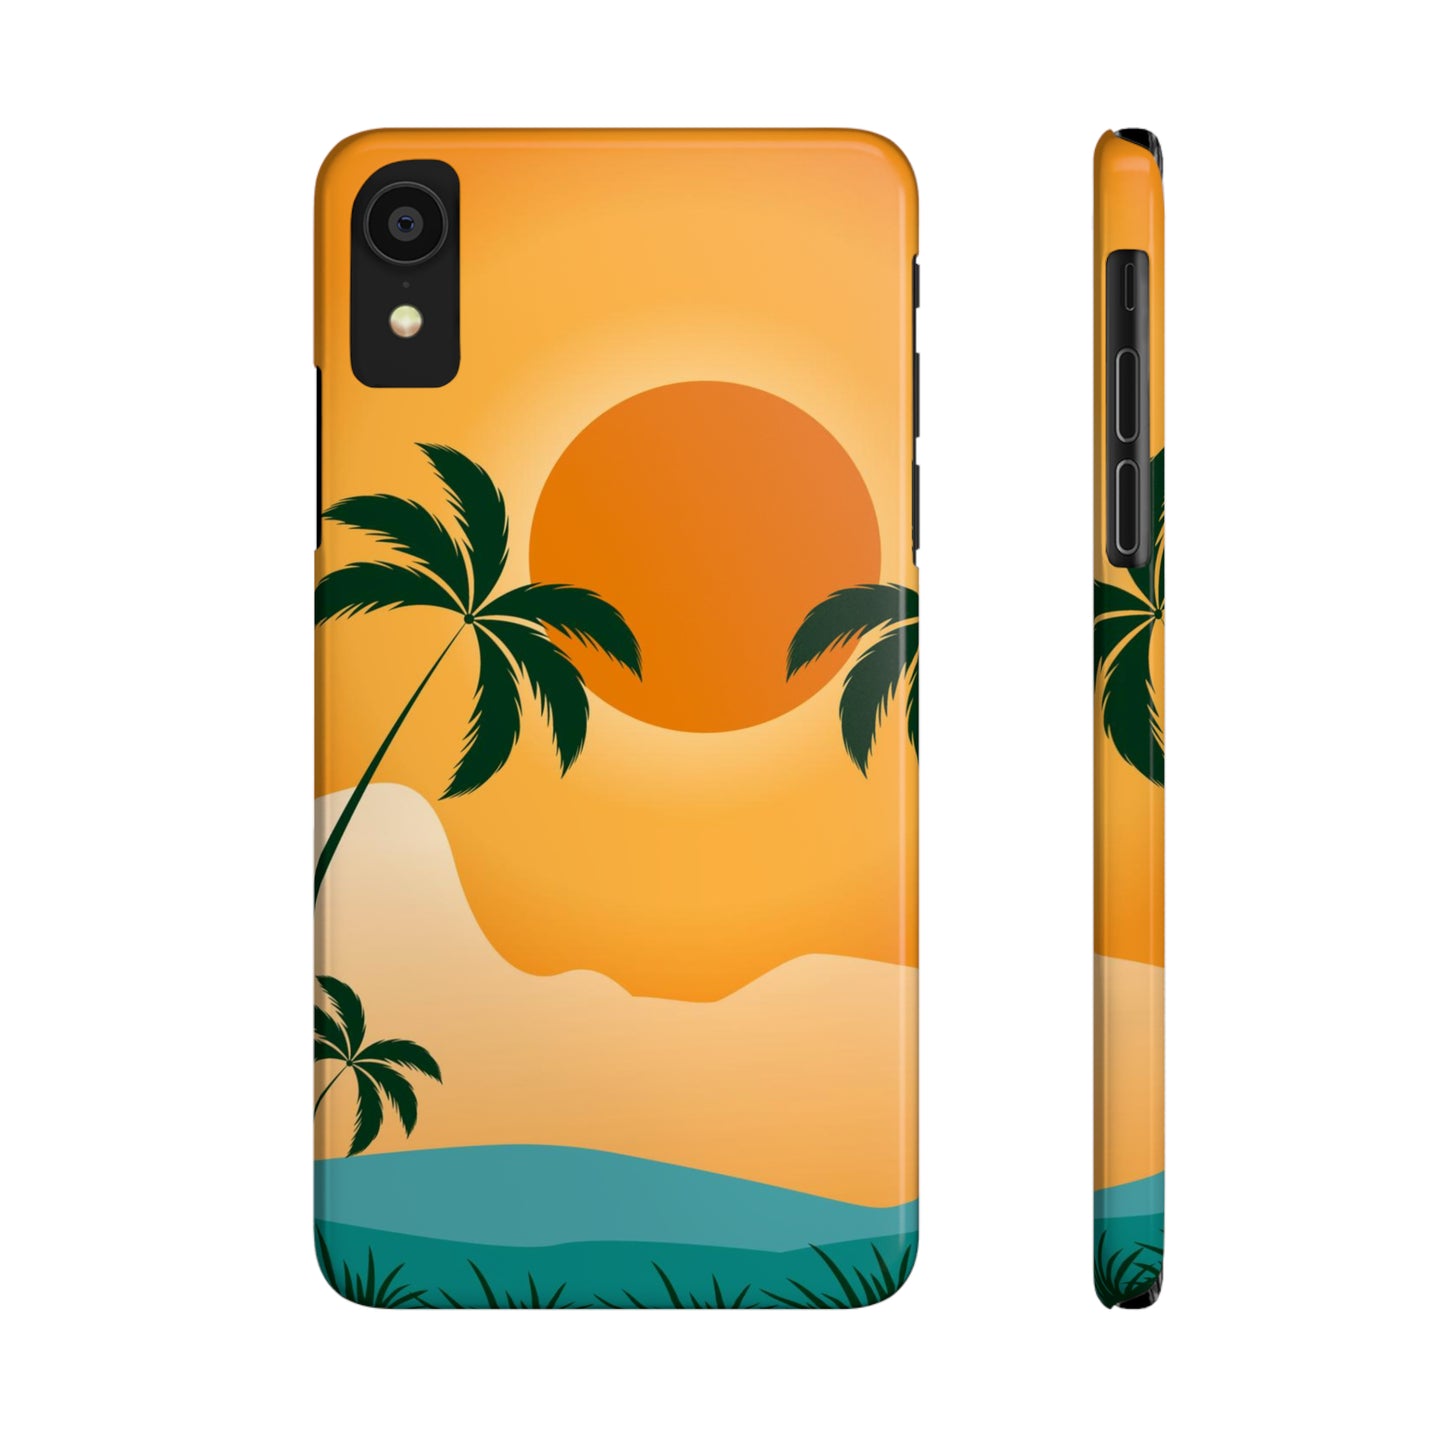 Sunset palm Orange iPhone case